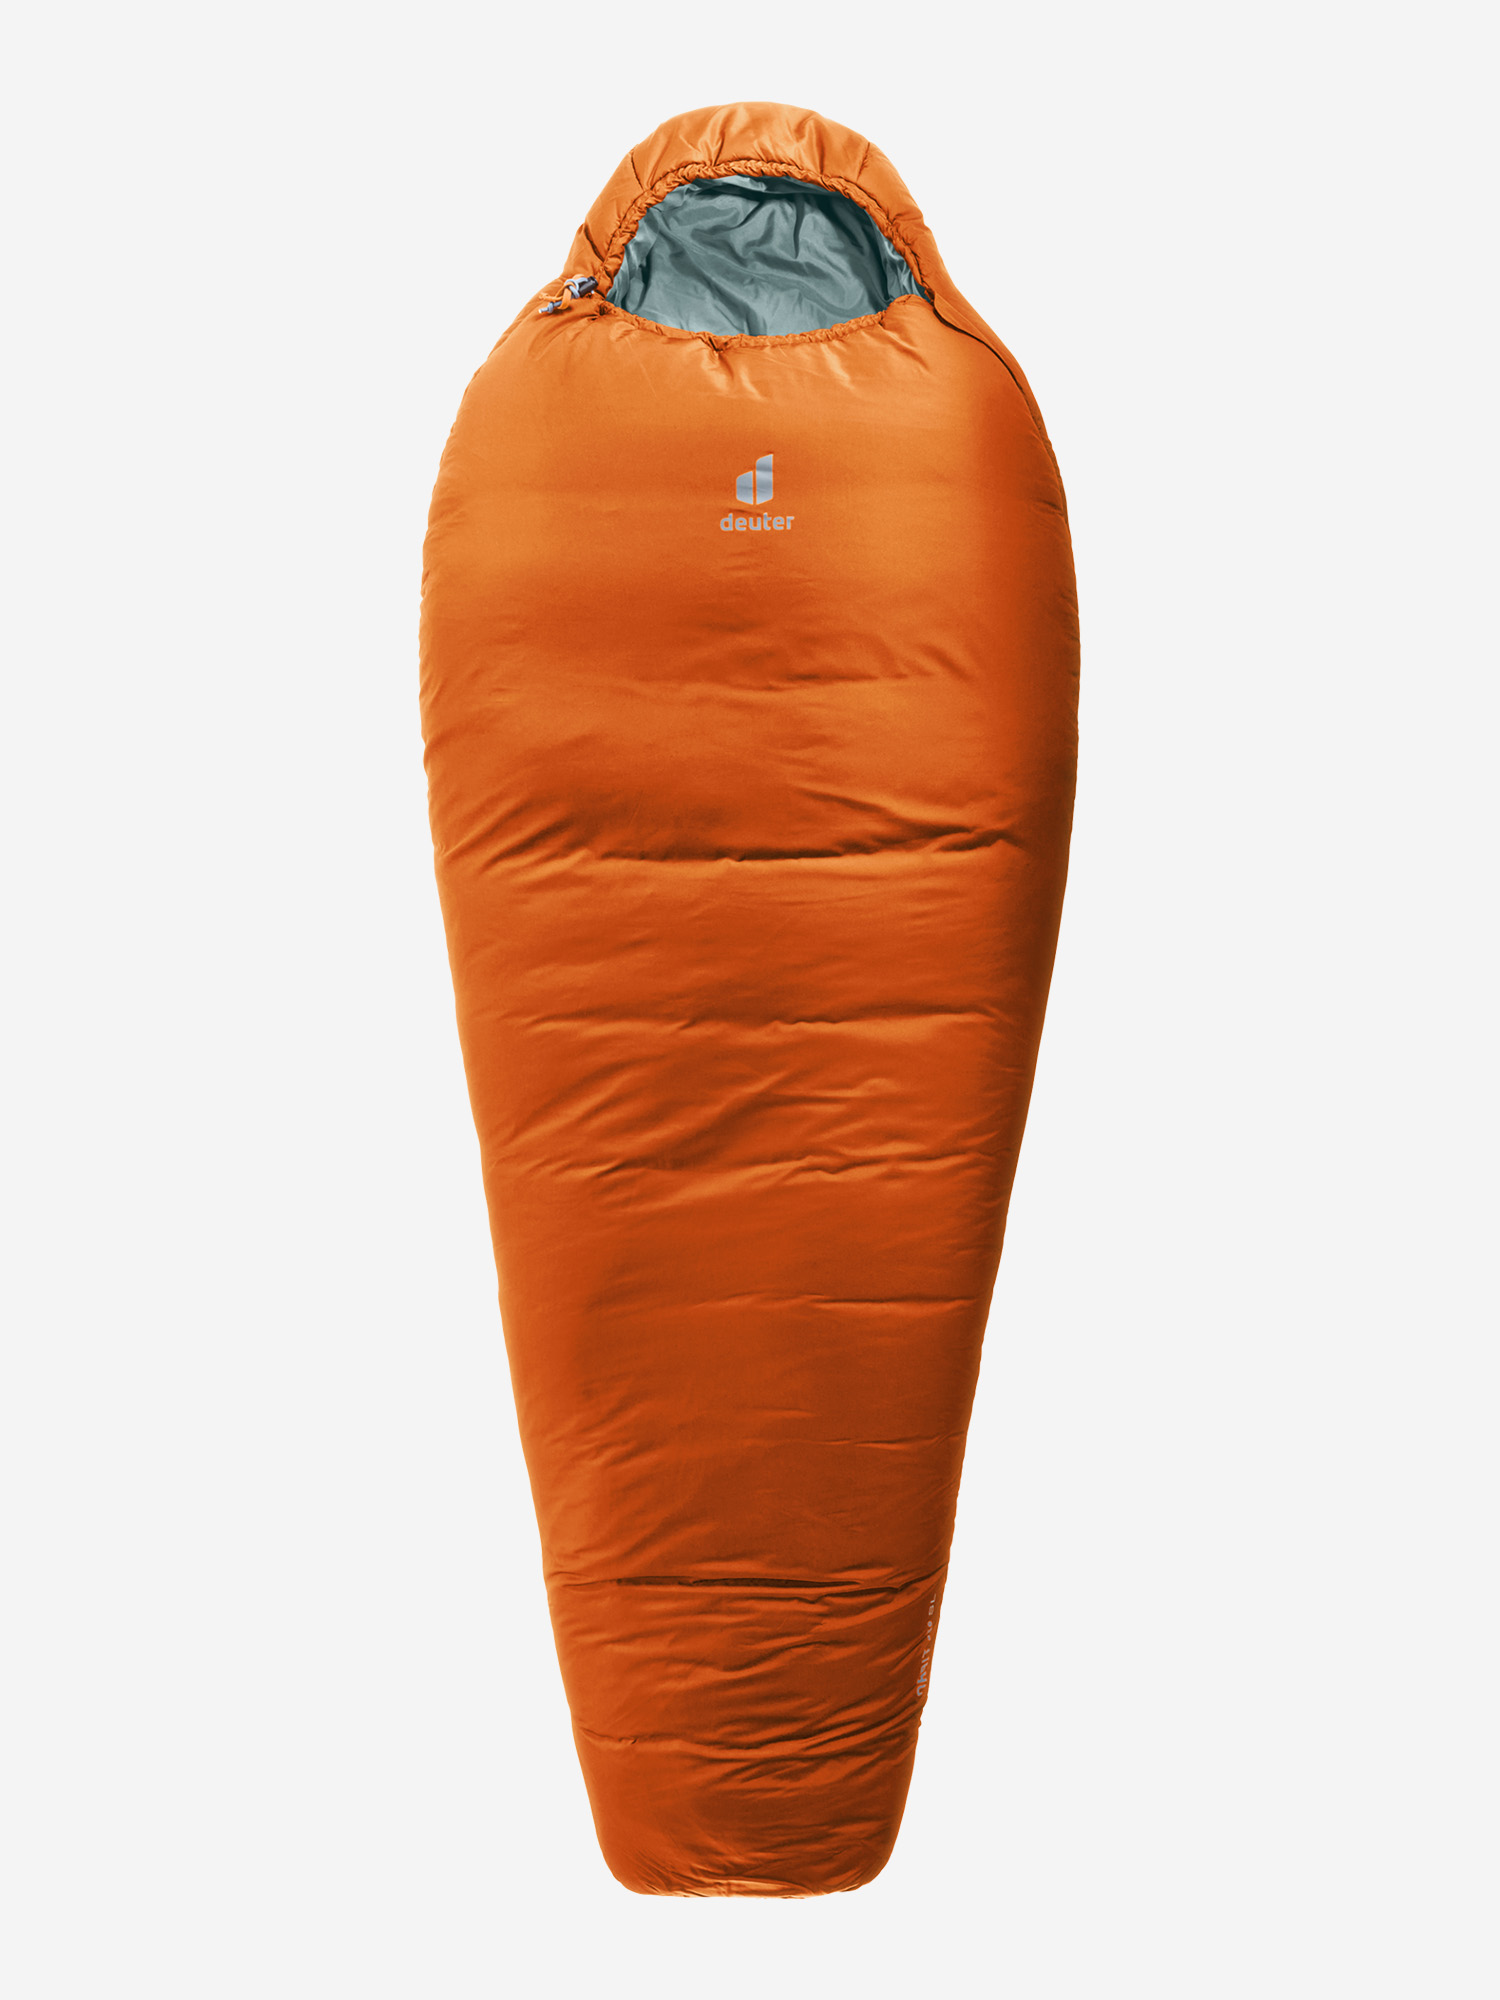 Спальный мешок Deuter Orbit -5, Оранжевый